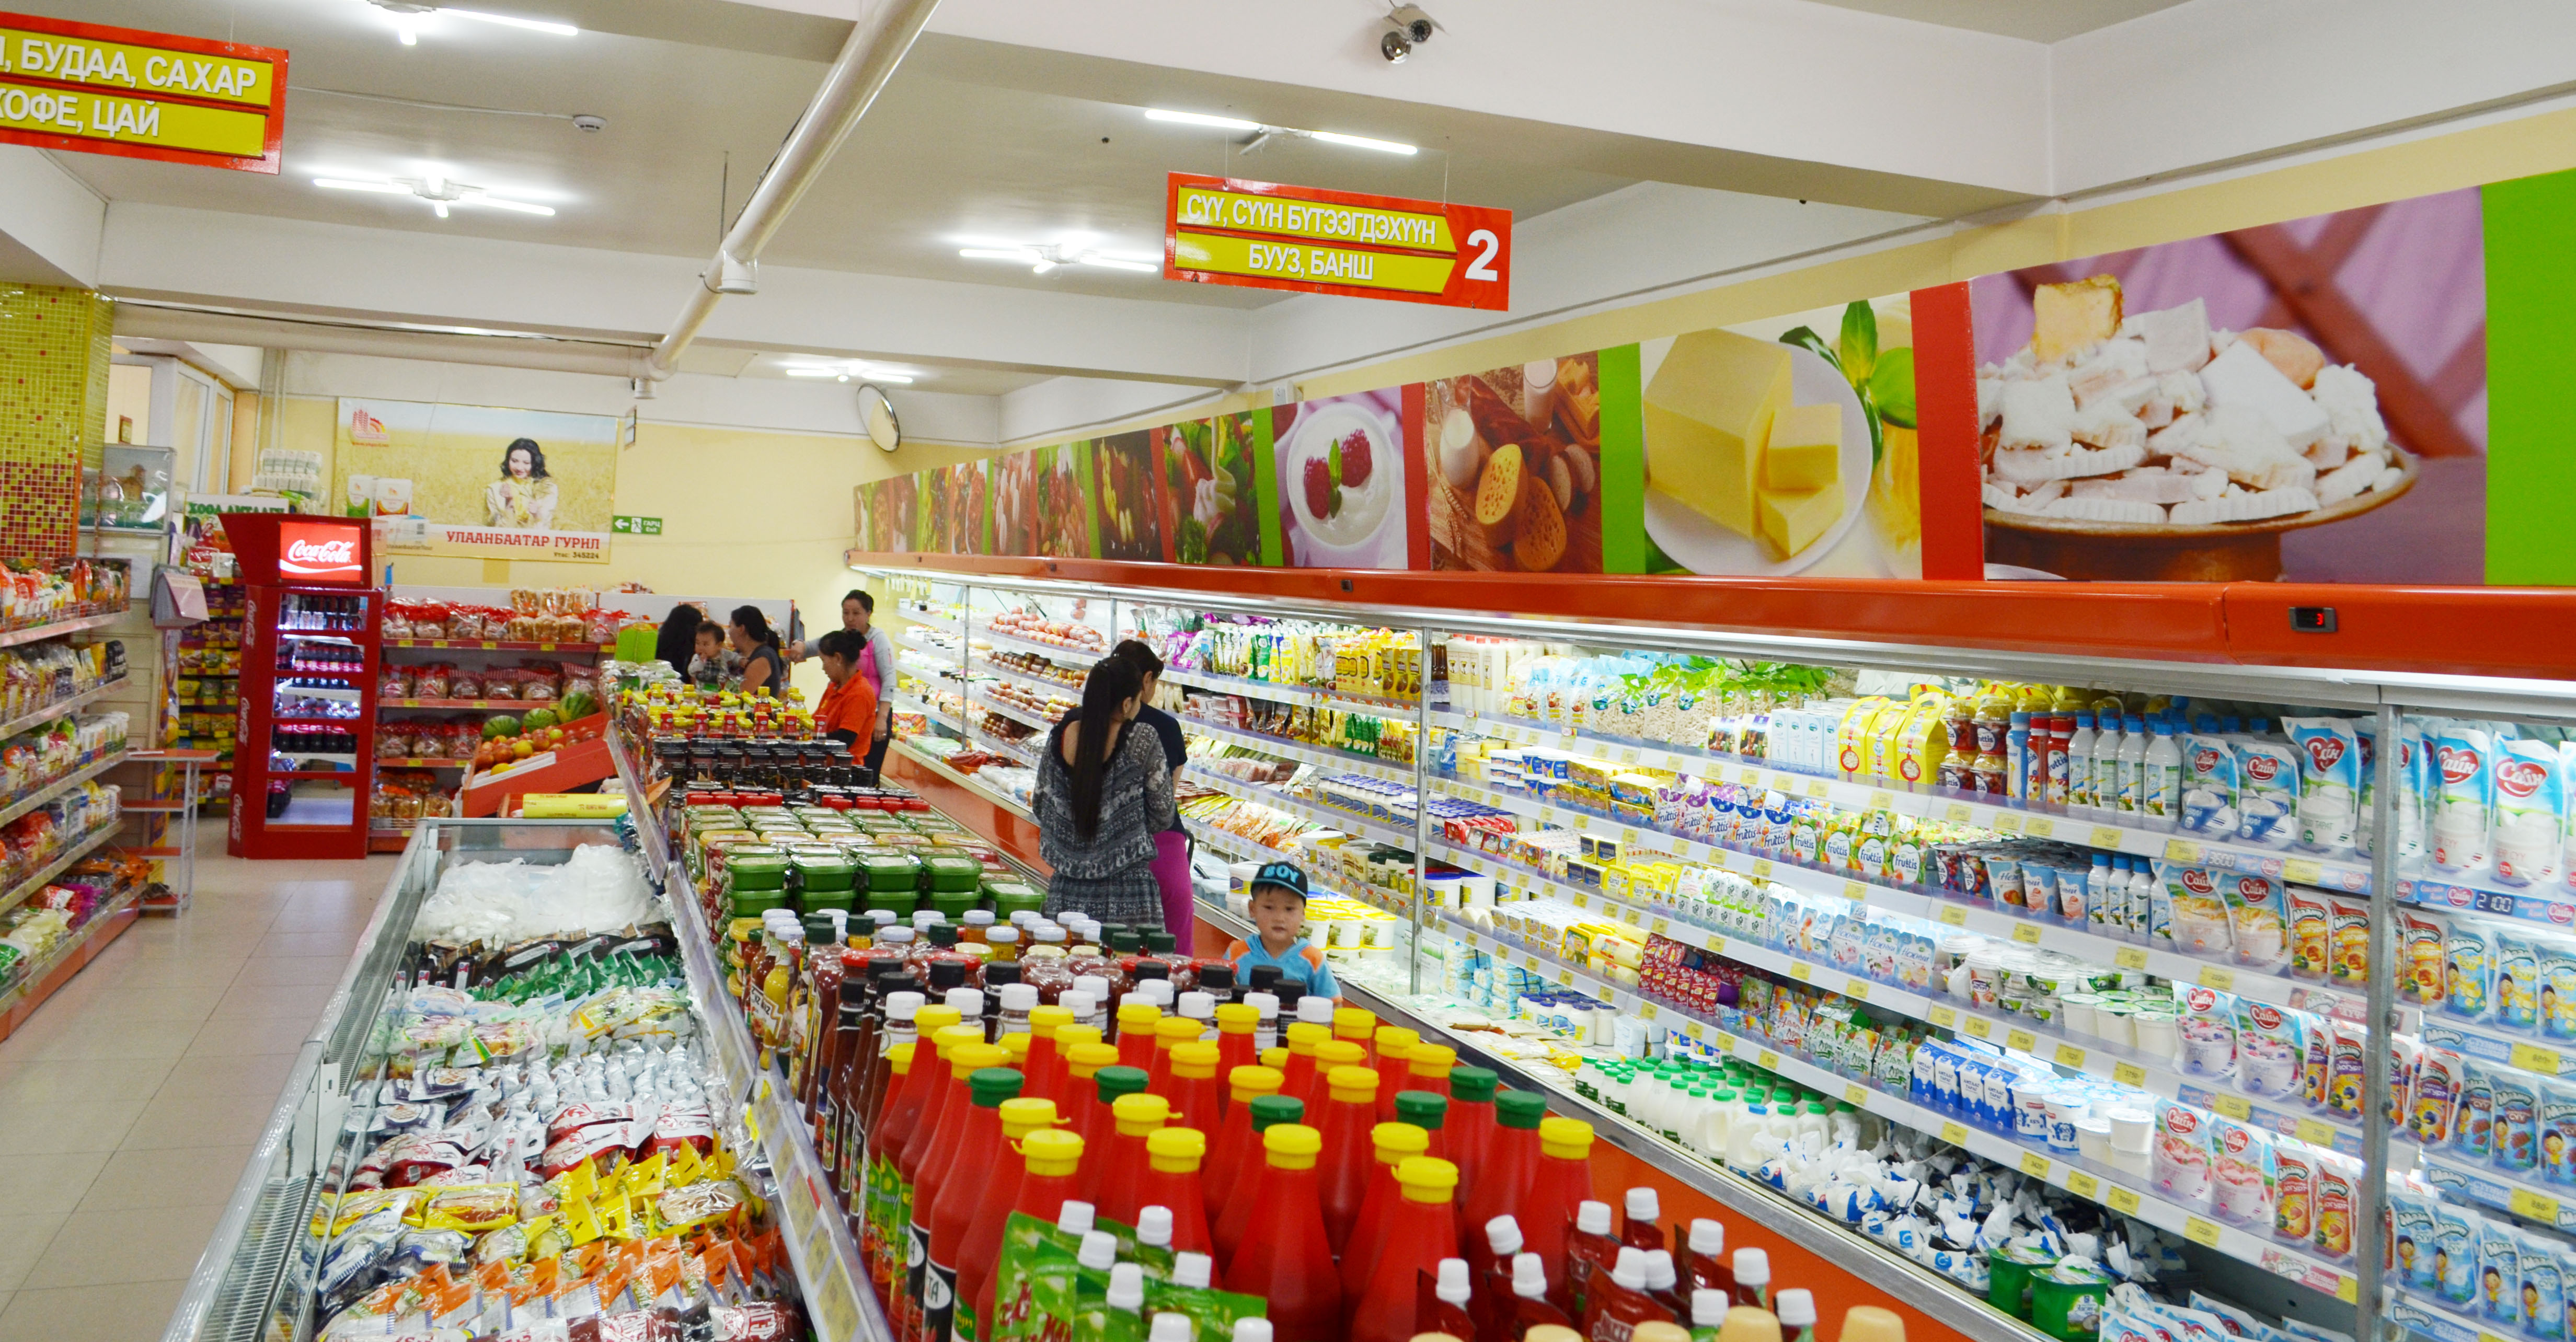 Инфляц Улаанбаатар хотод 16.6 хувьд хүрэхэд хүнс, тээврийн бүлгийн үнэ 20% давж өссөн нь нөлөөлжээ